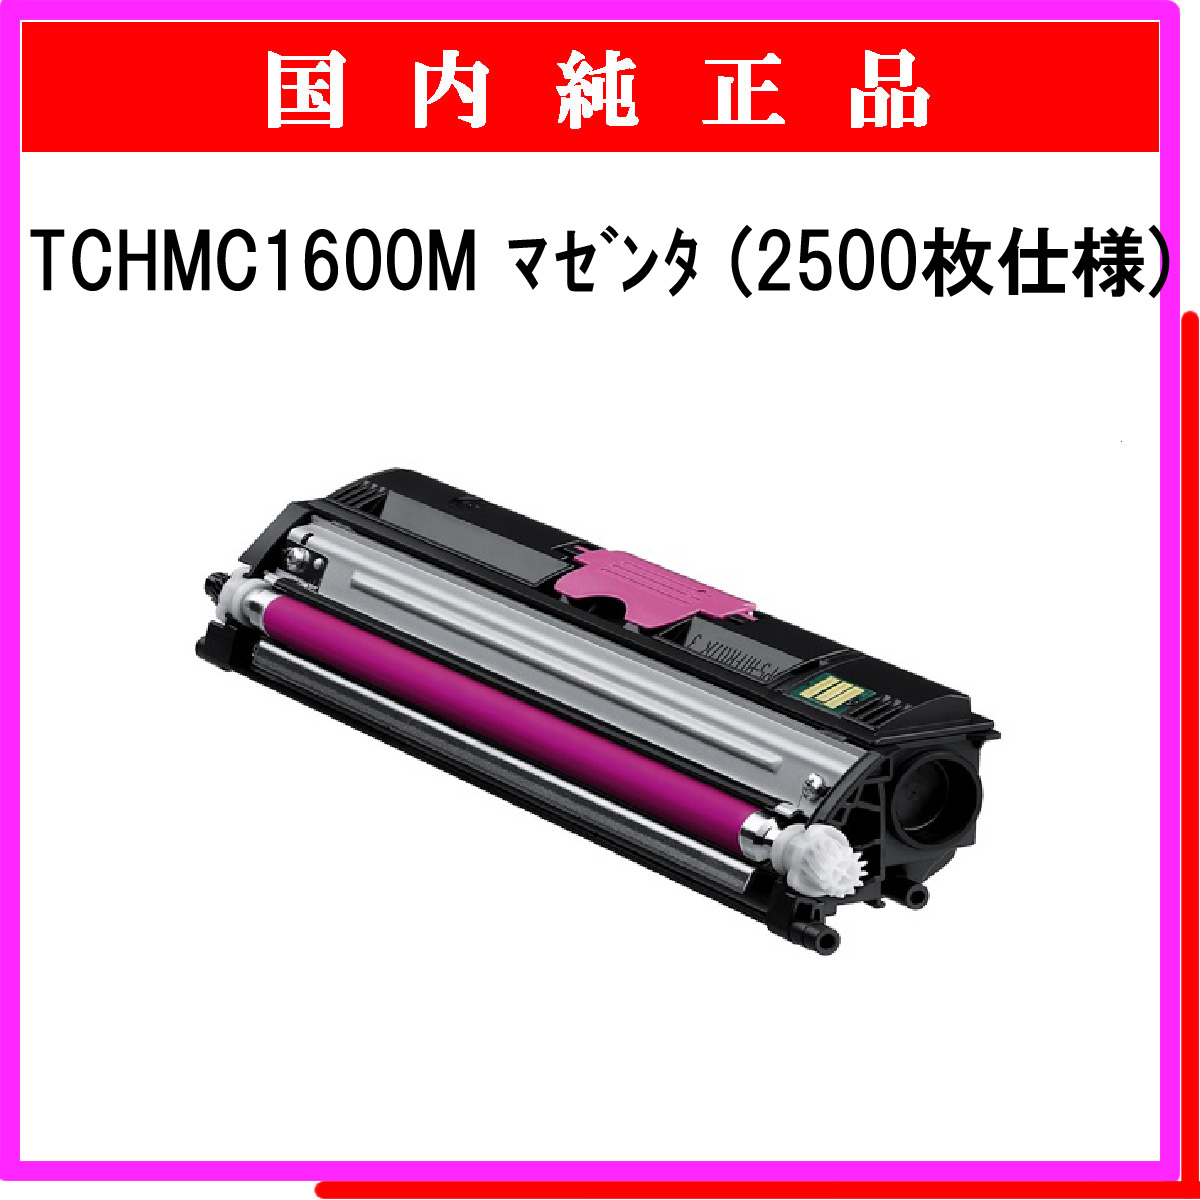 TCHMC1600M (2500枚仕様) 純正